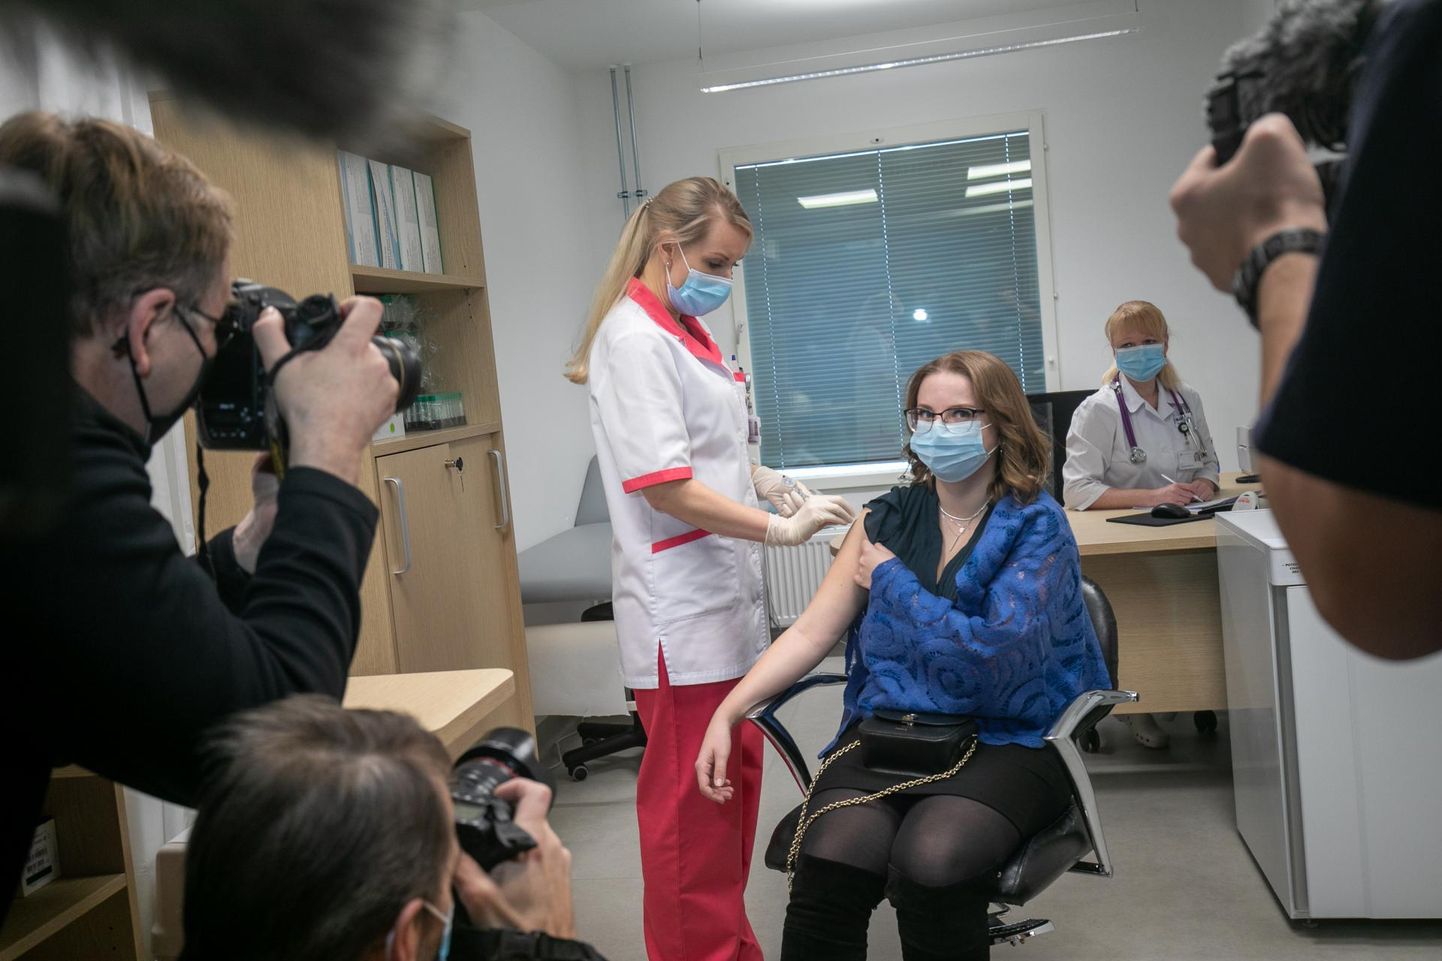 Esimene vaktsiinisüst tehti tele- ja fotokaamerate ees Järve tervisekeskuses Ida-Viru keskhaigla arst-residendile Jelena Rozinkole.